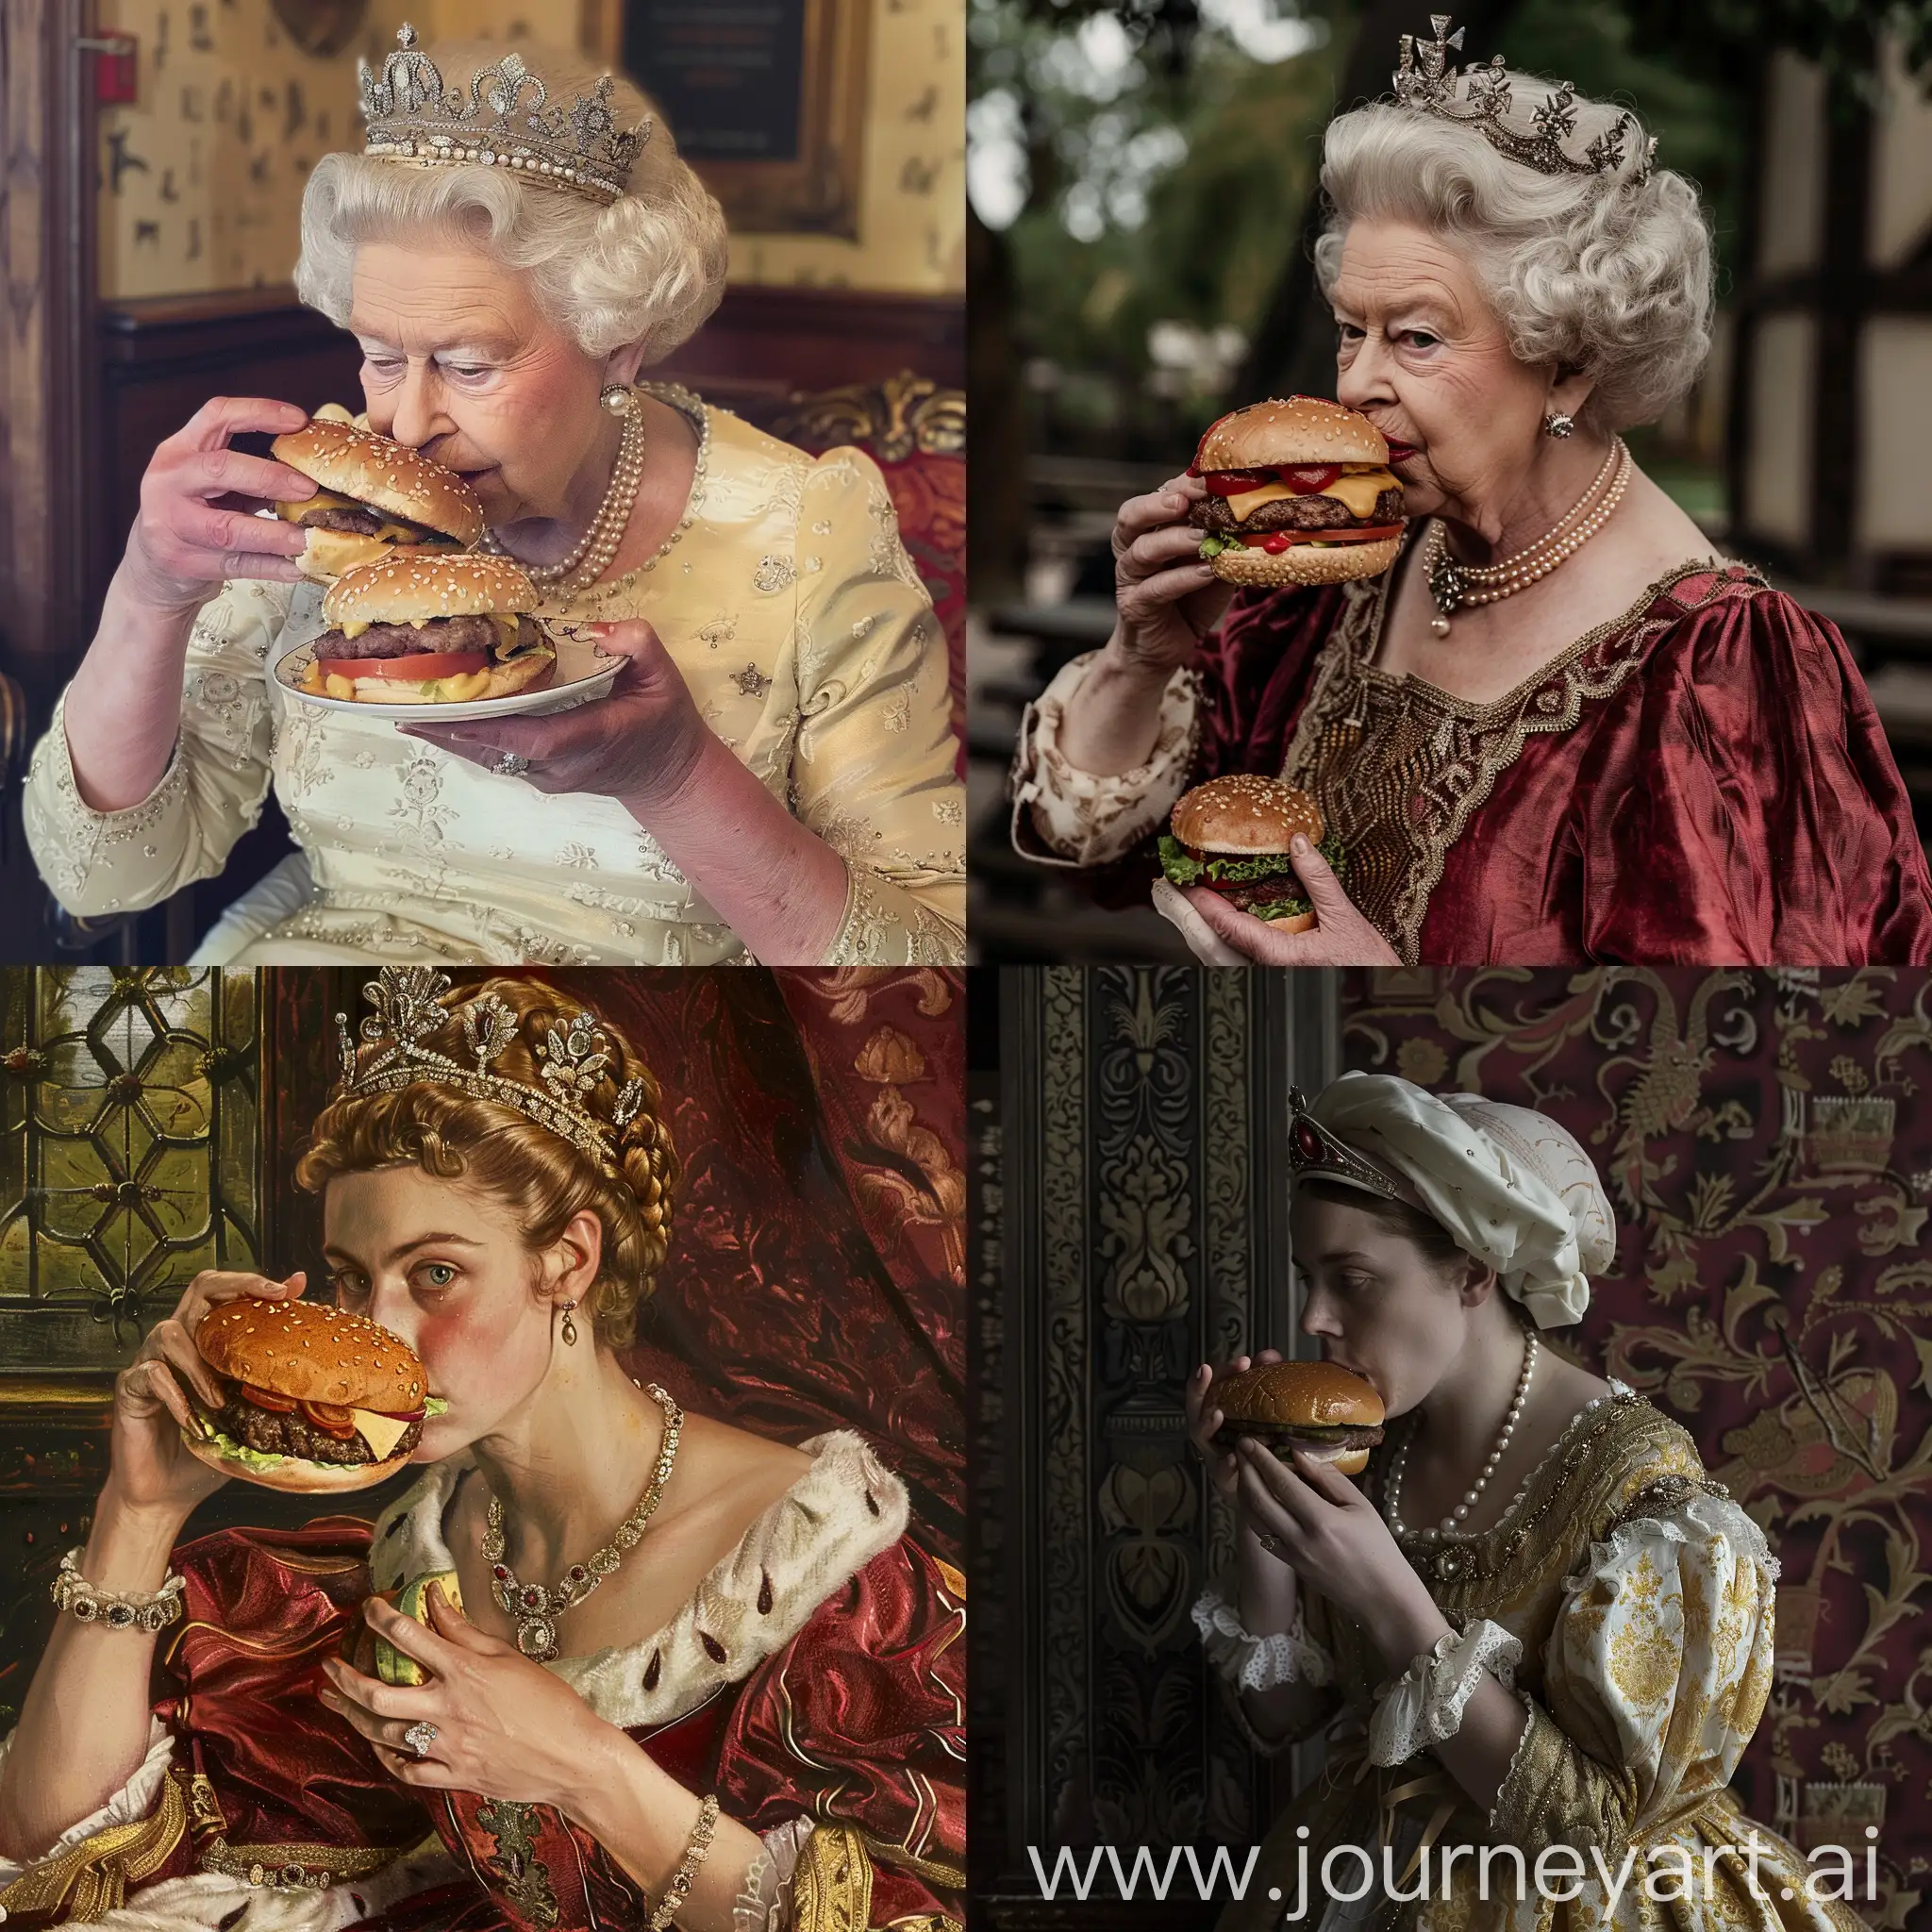 Reina Isabel eating burger